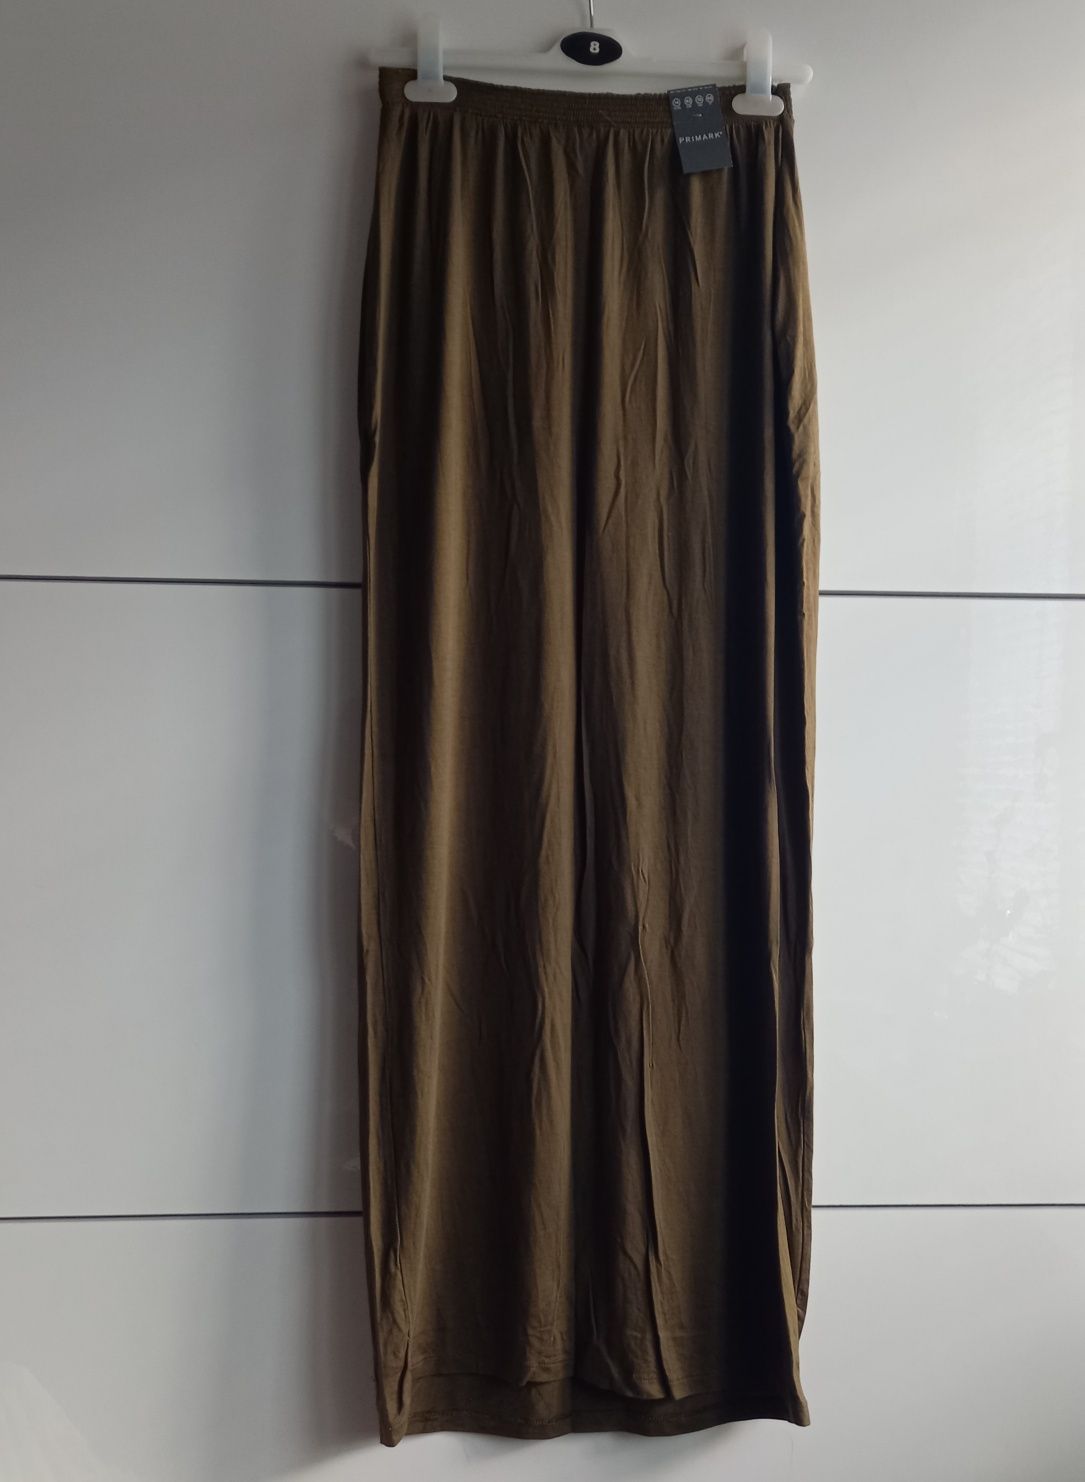 Spódnica maxi oliwkowa długa khaki zielona elastyczna nowa Primark